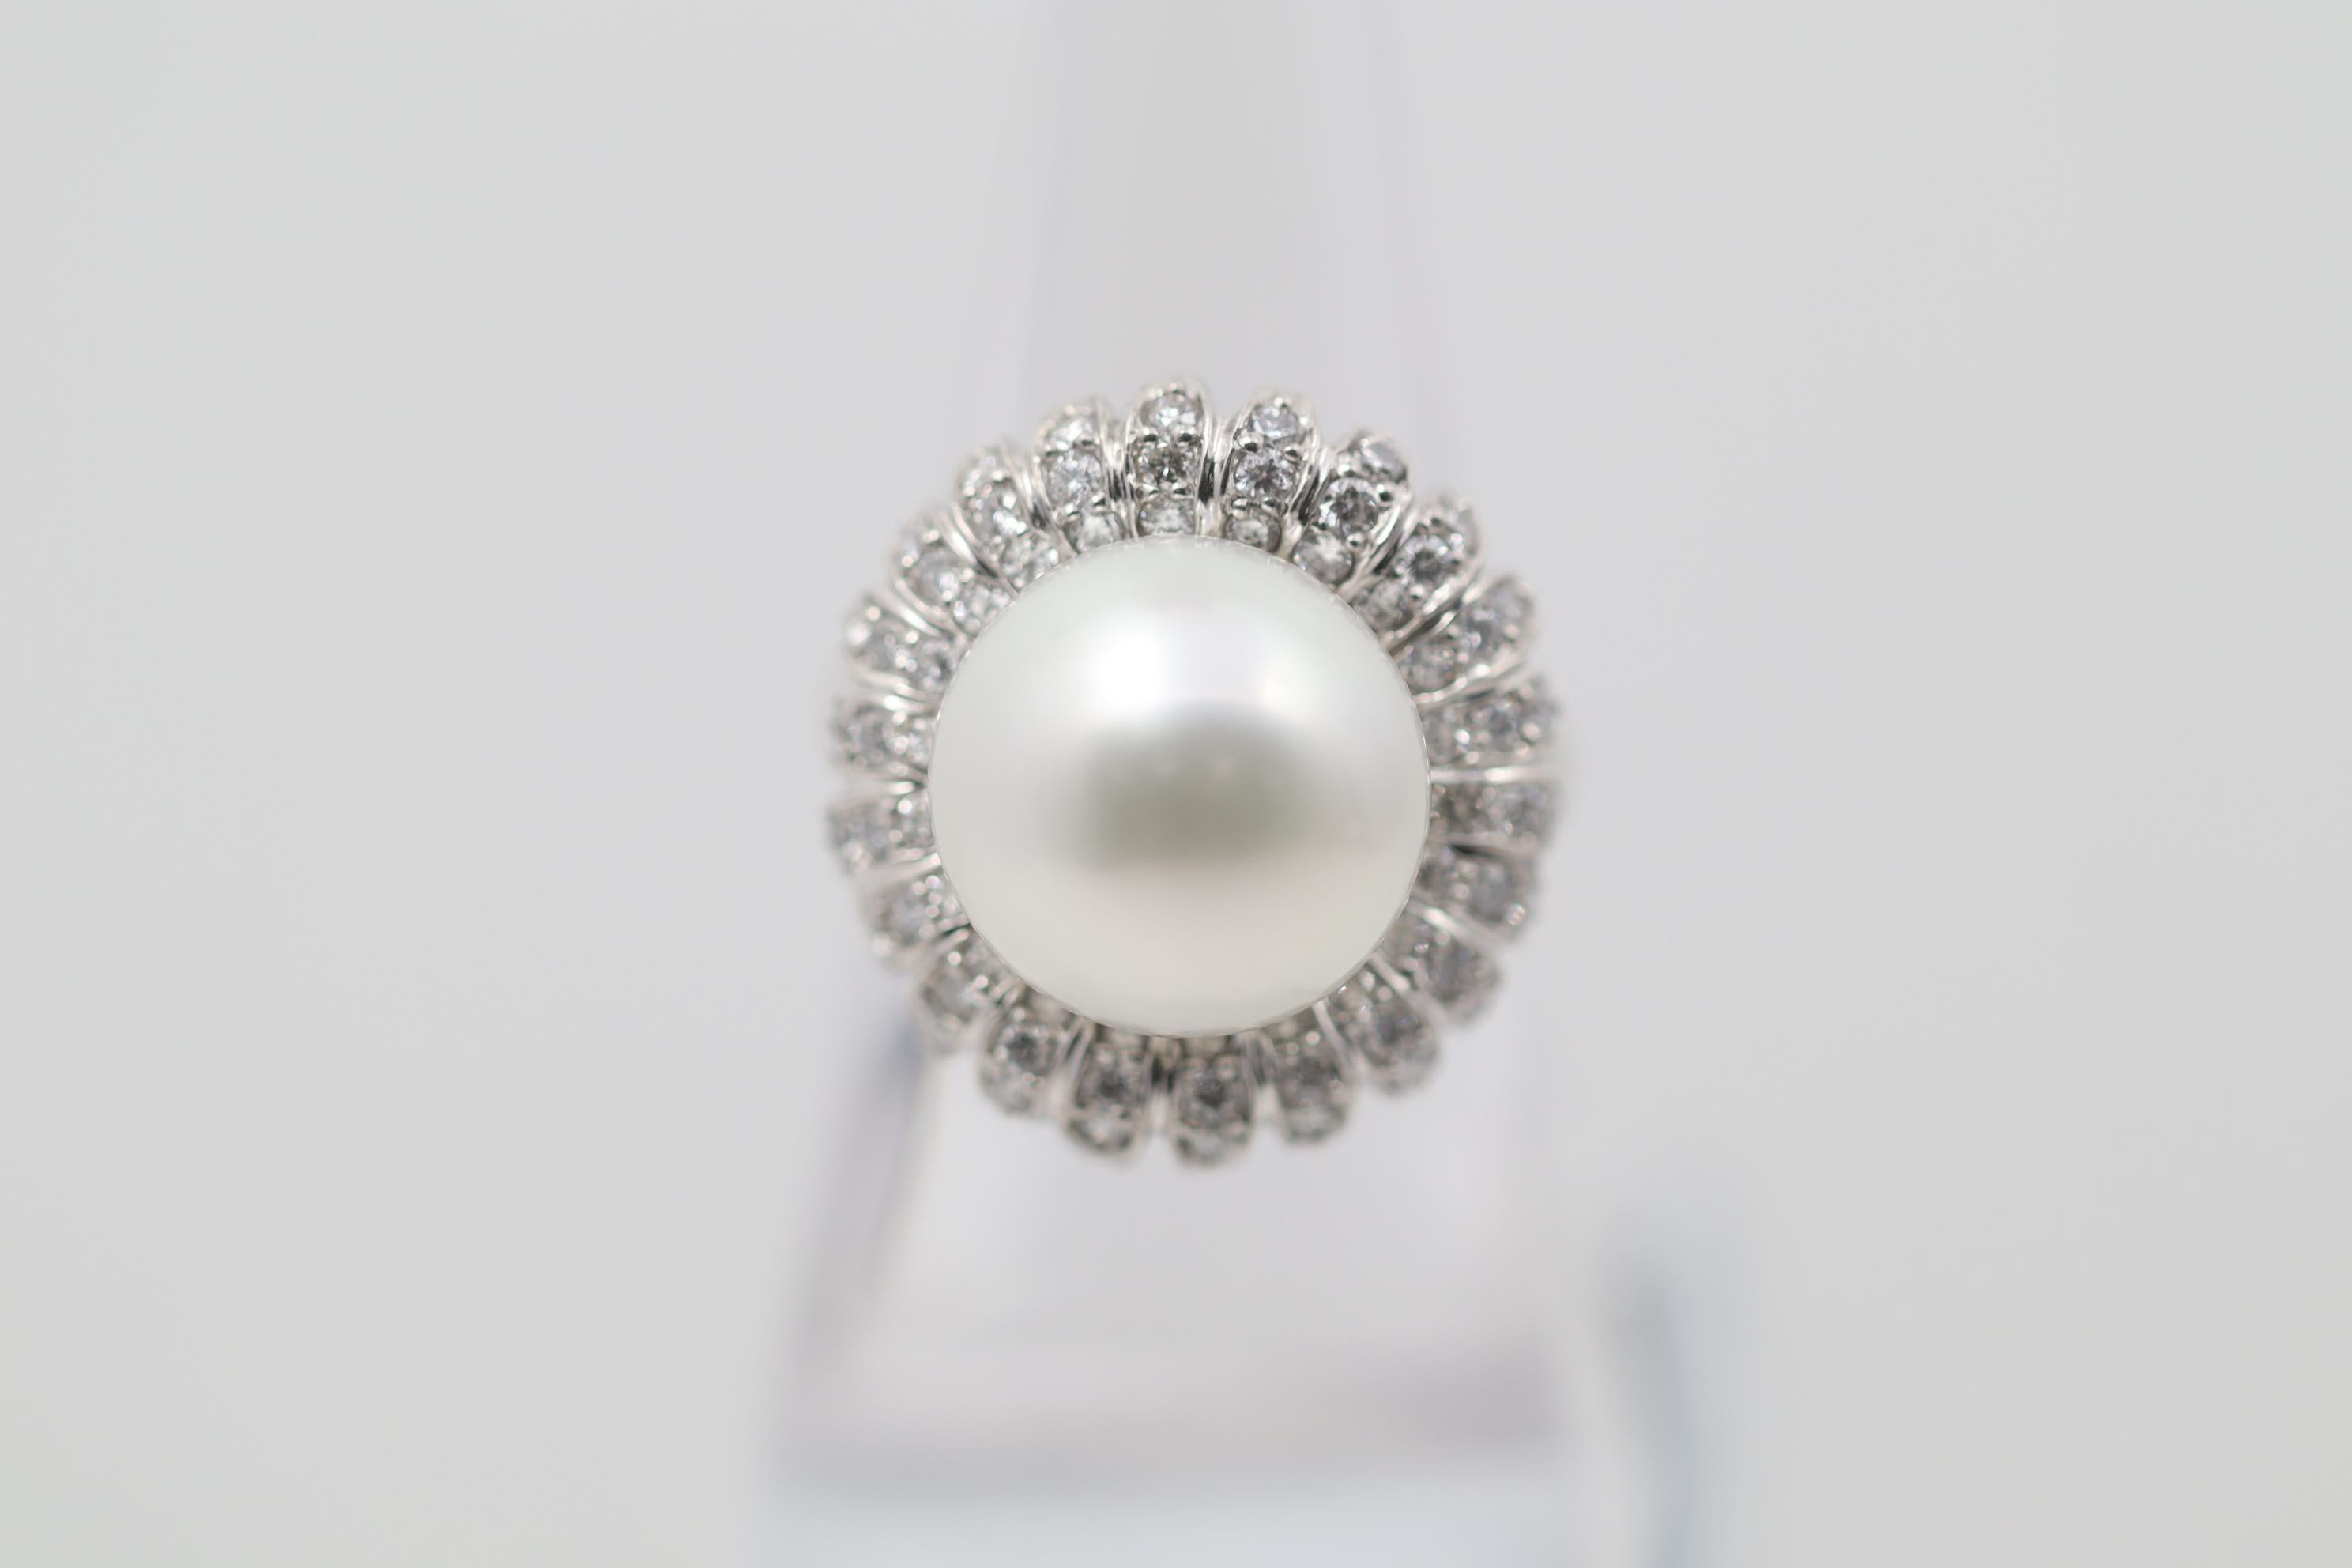 Ein schöner Blumenring aus Südseeperlen und Diamanten. Die Perle ist 13 mm groß, hat einen tollen Glanz und ist frei von Fehlern. Sie wird von 0,86 Karat Diamanten akzentuiert, die in einem floralen Muster um die Perle herum gefasst sind.